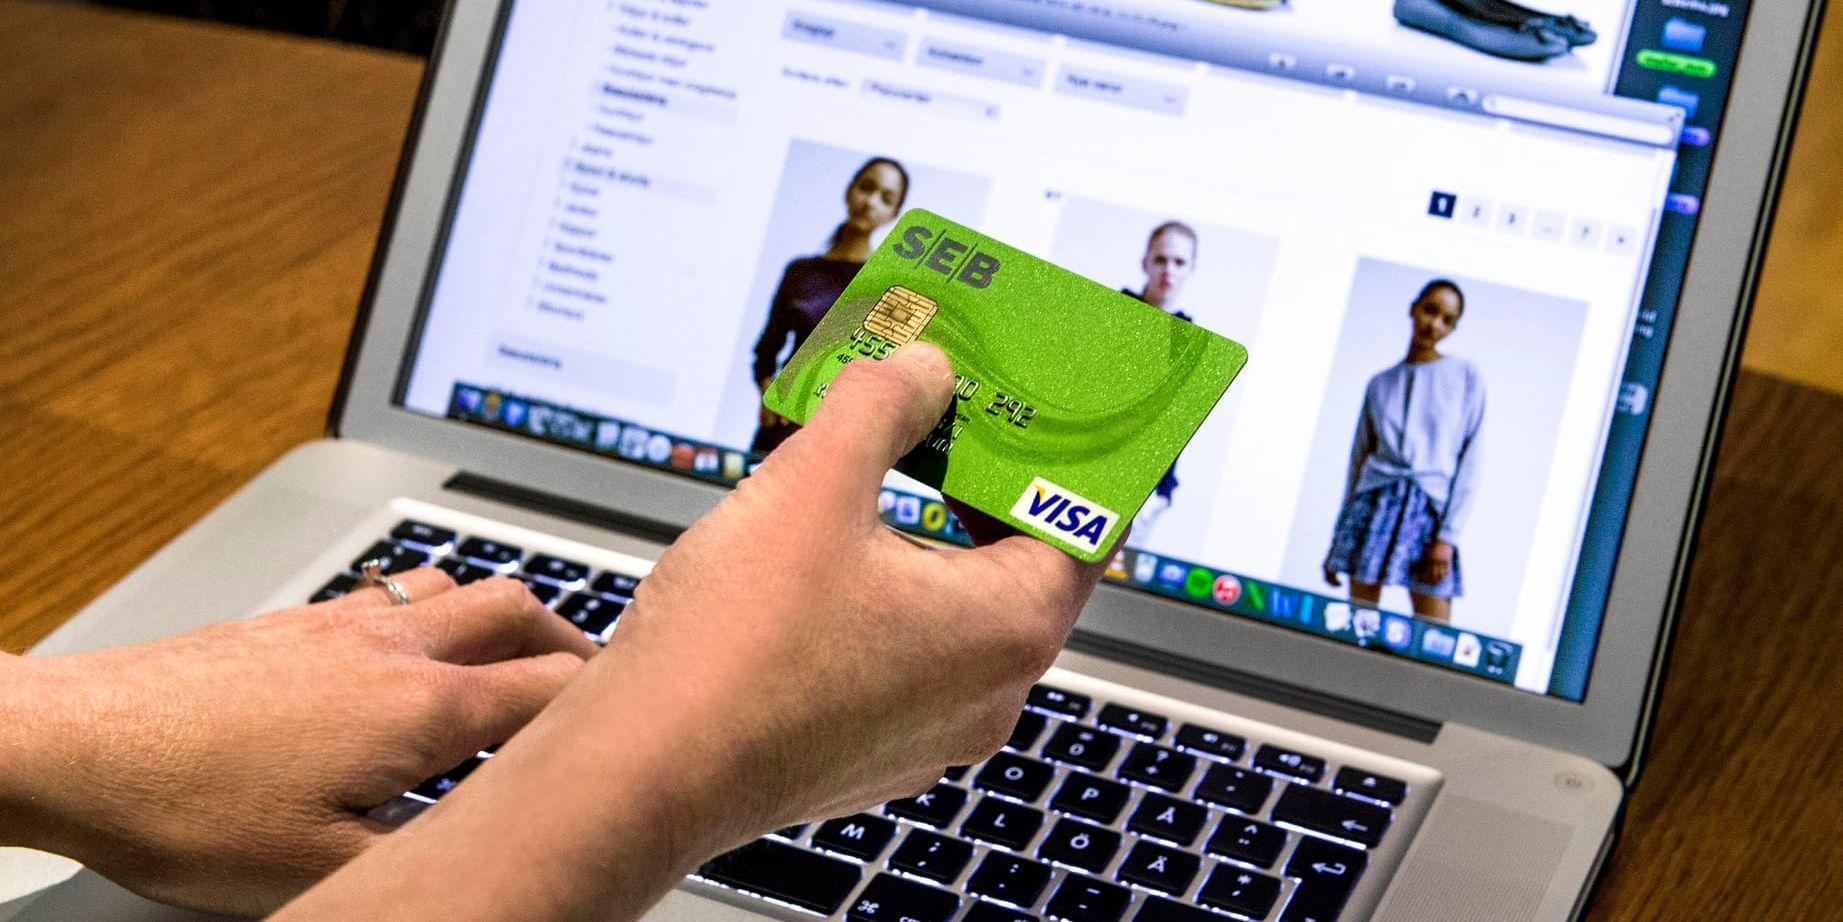 En svensk man finns bland de totalt 95 personer som misstänks för kreditkortsbedrägerier runtom i Europa. Arkivbild.